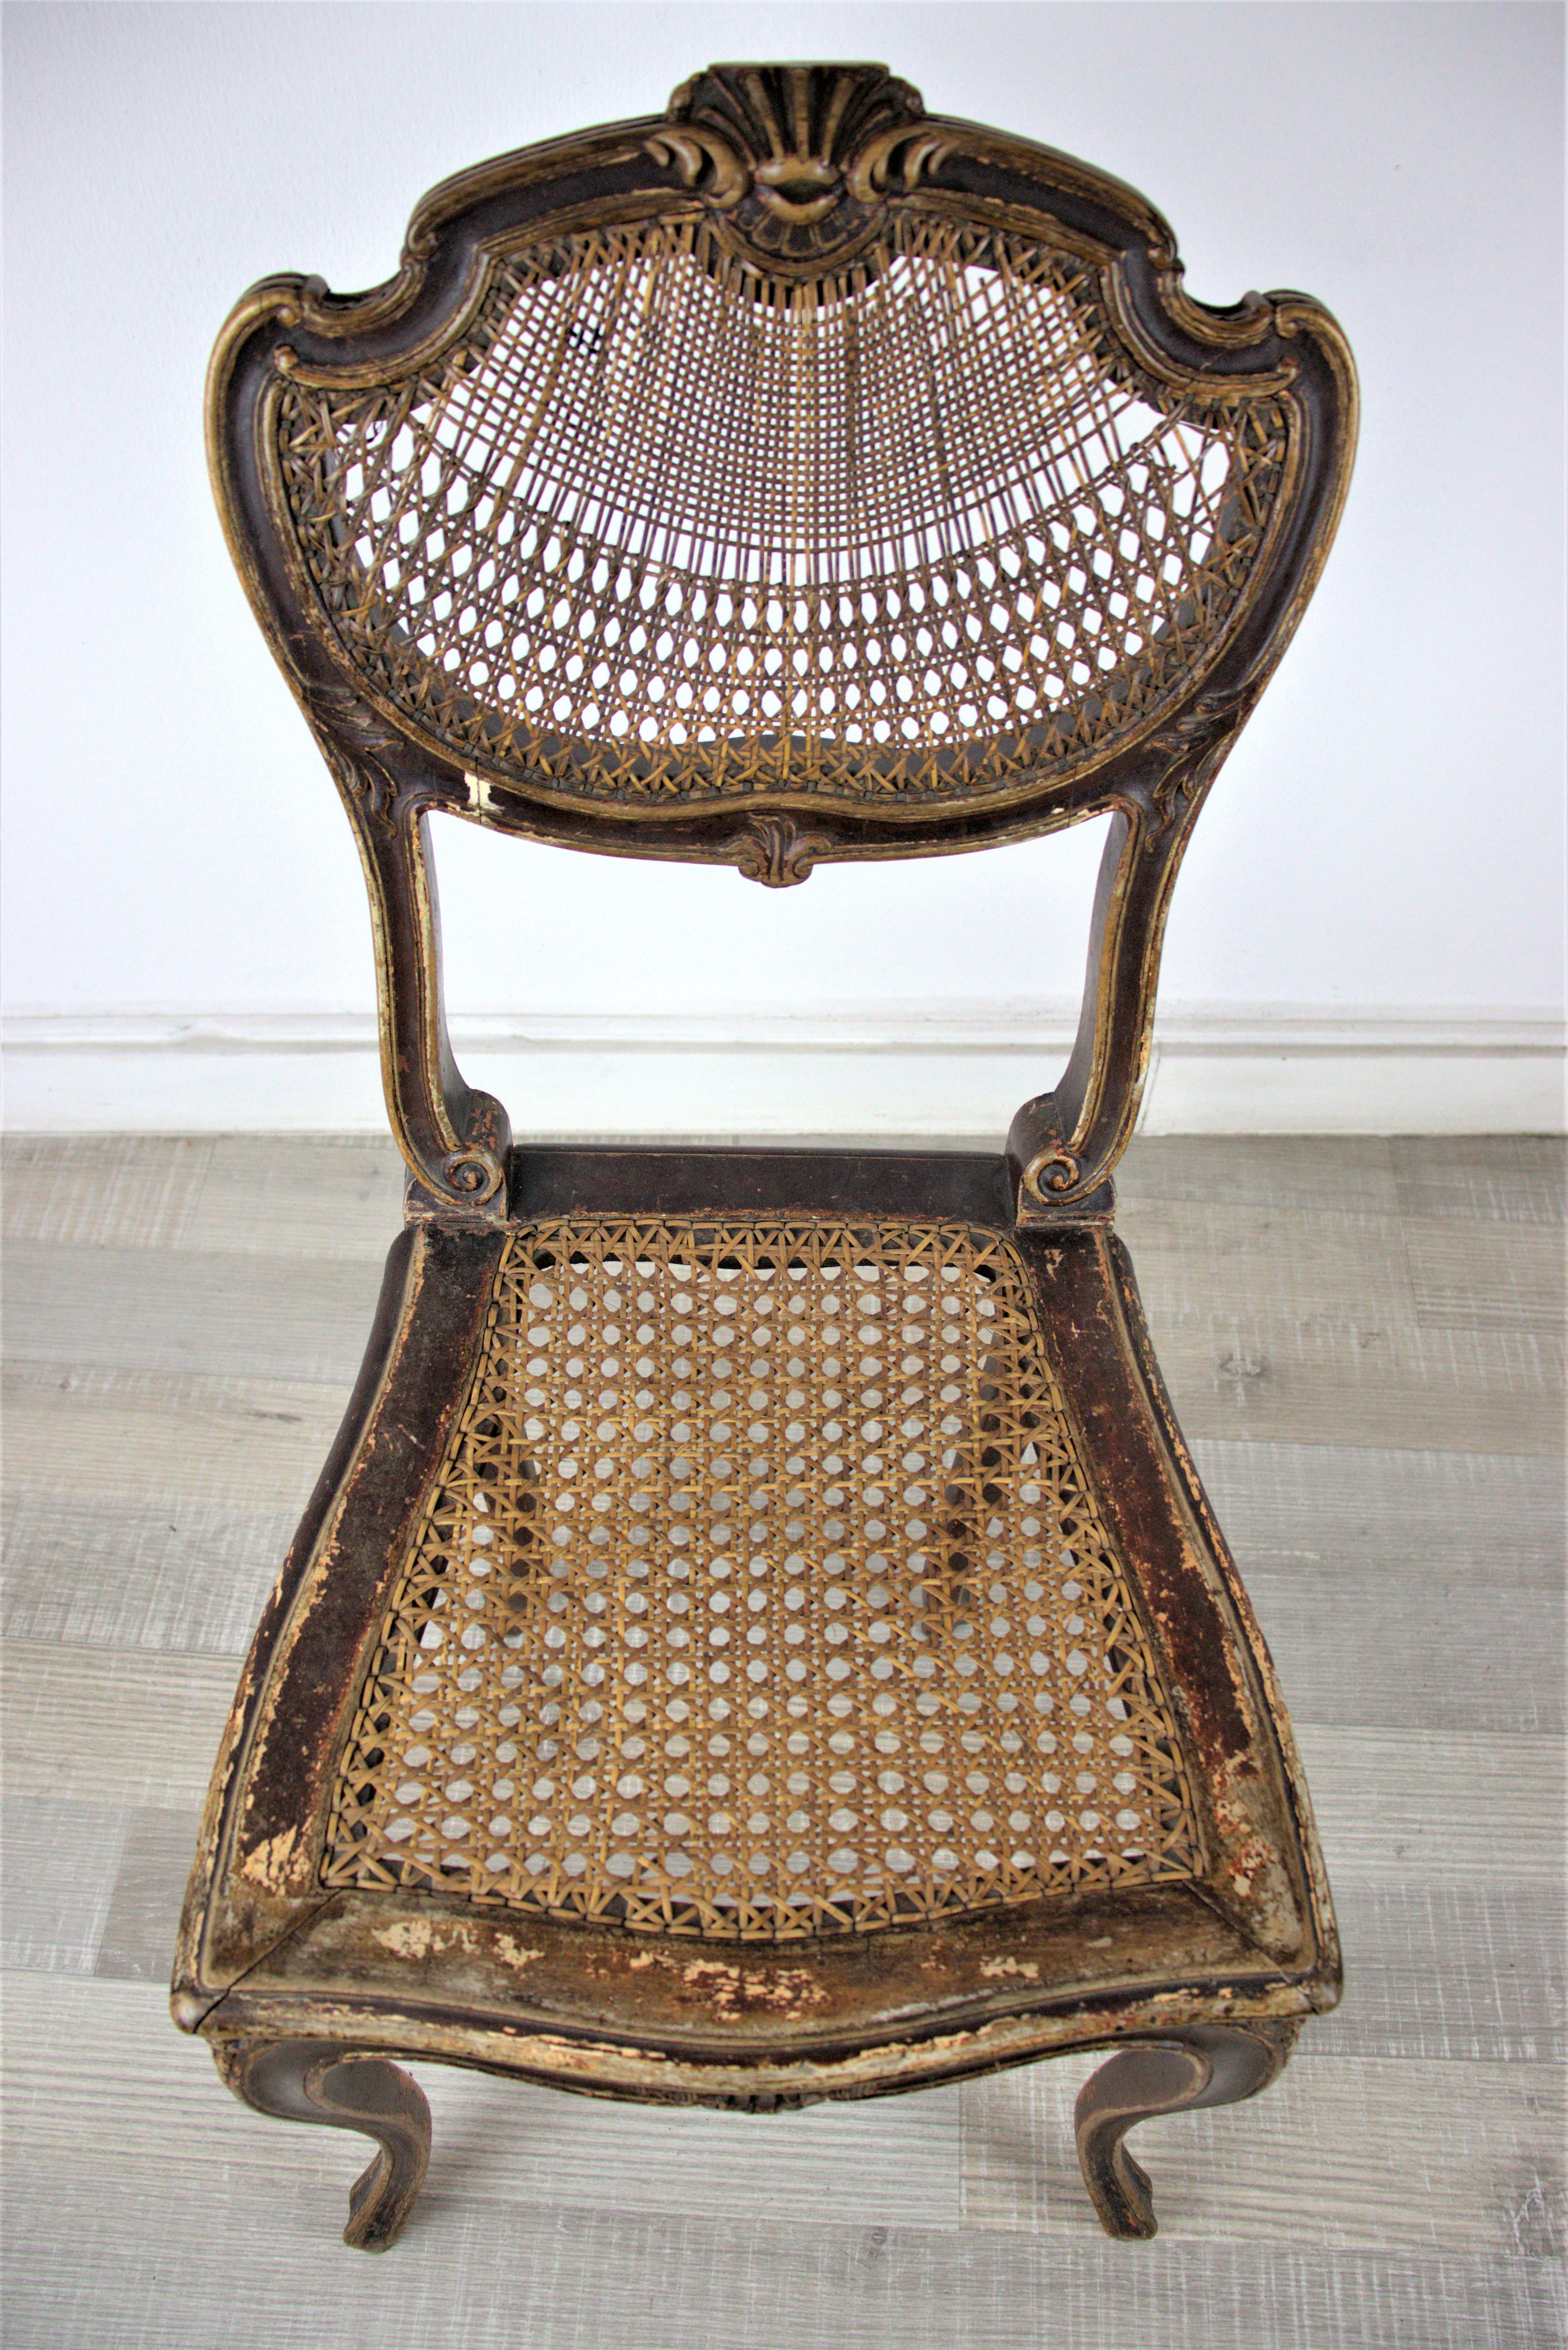 Petite chaise viennoise rococo en bois et roseau, de la fin du XVIIIe siècle.

Cette pièce est une antiquité intacte ! Utilisez-le comme décoration de fantaisie dans votre résidence. 

Vous pouvez trouver un canapé similaire dans notre sortiment,.